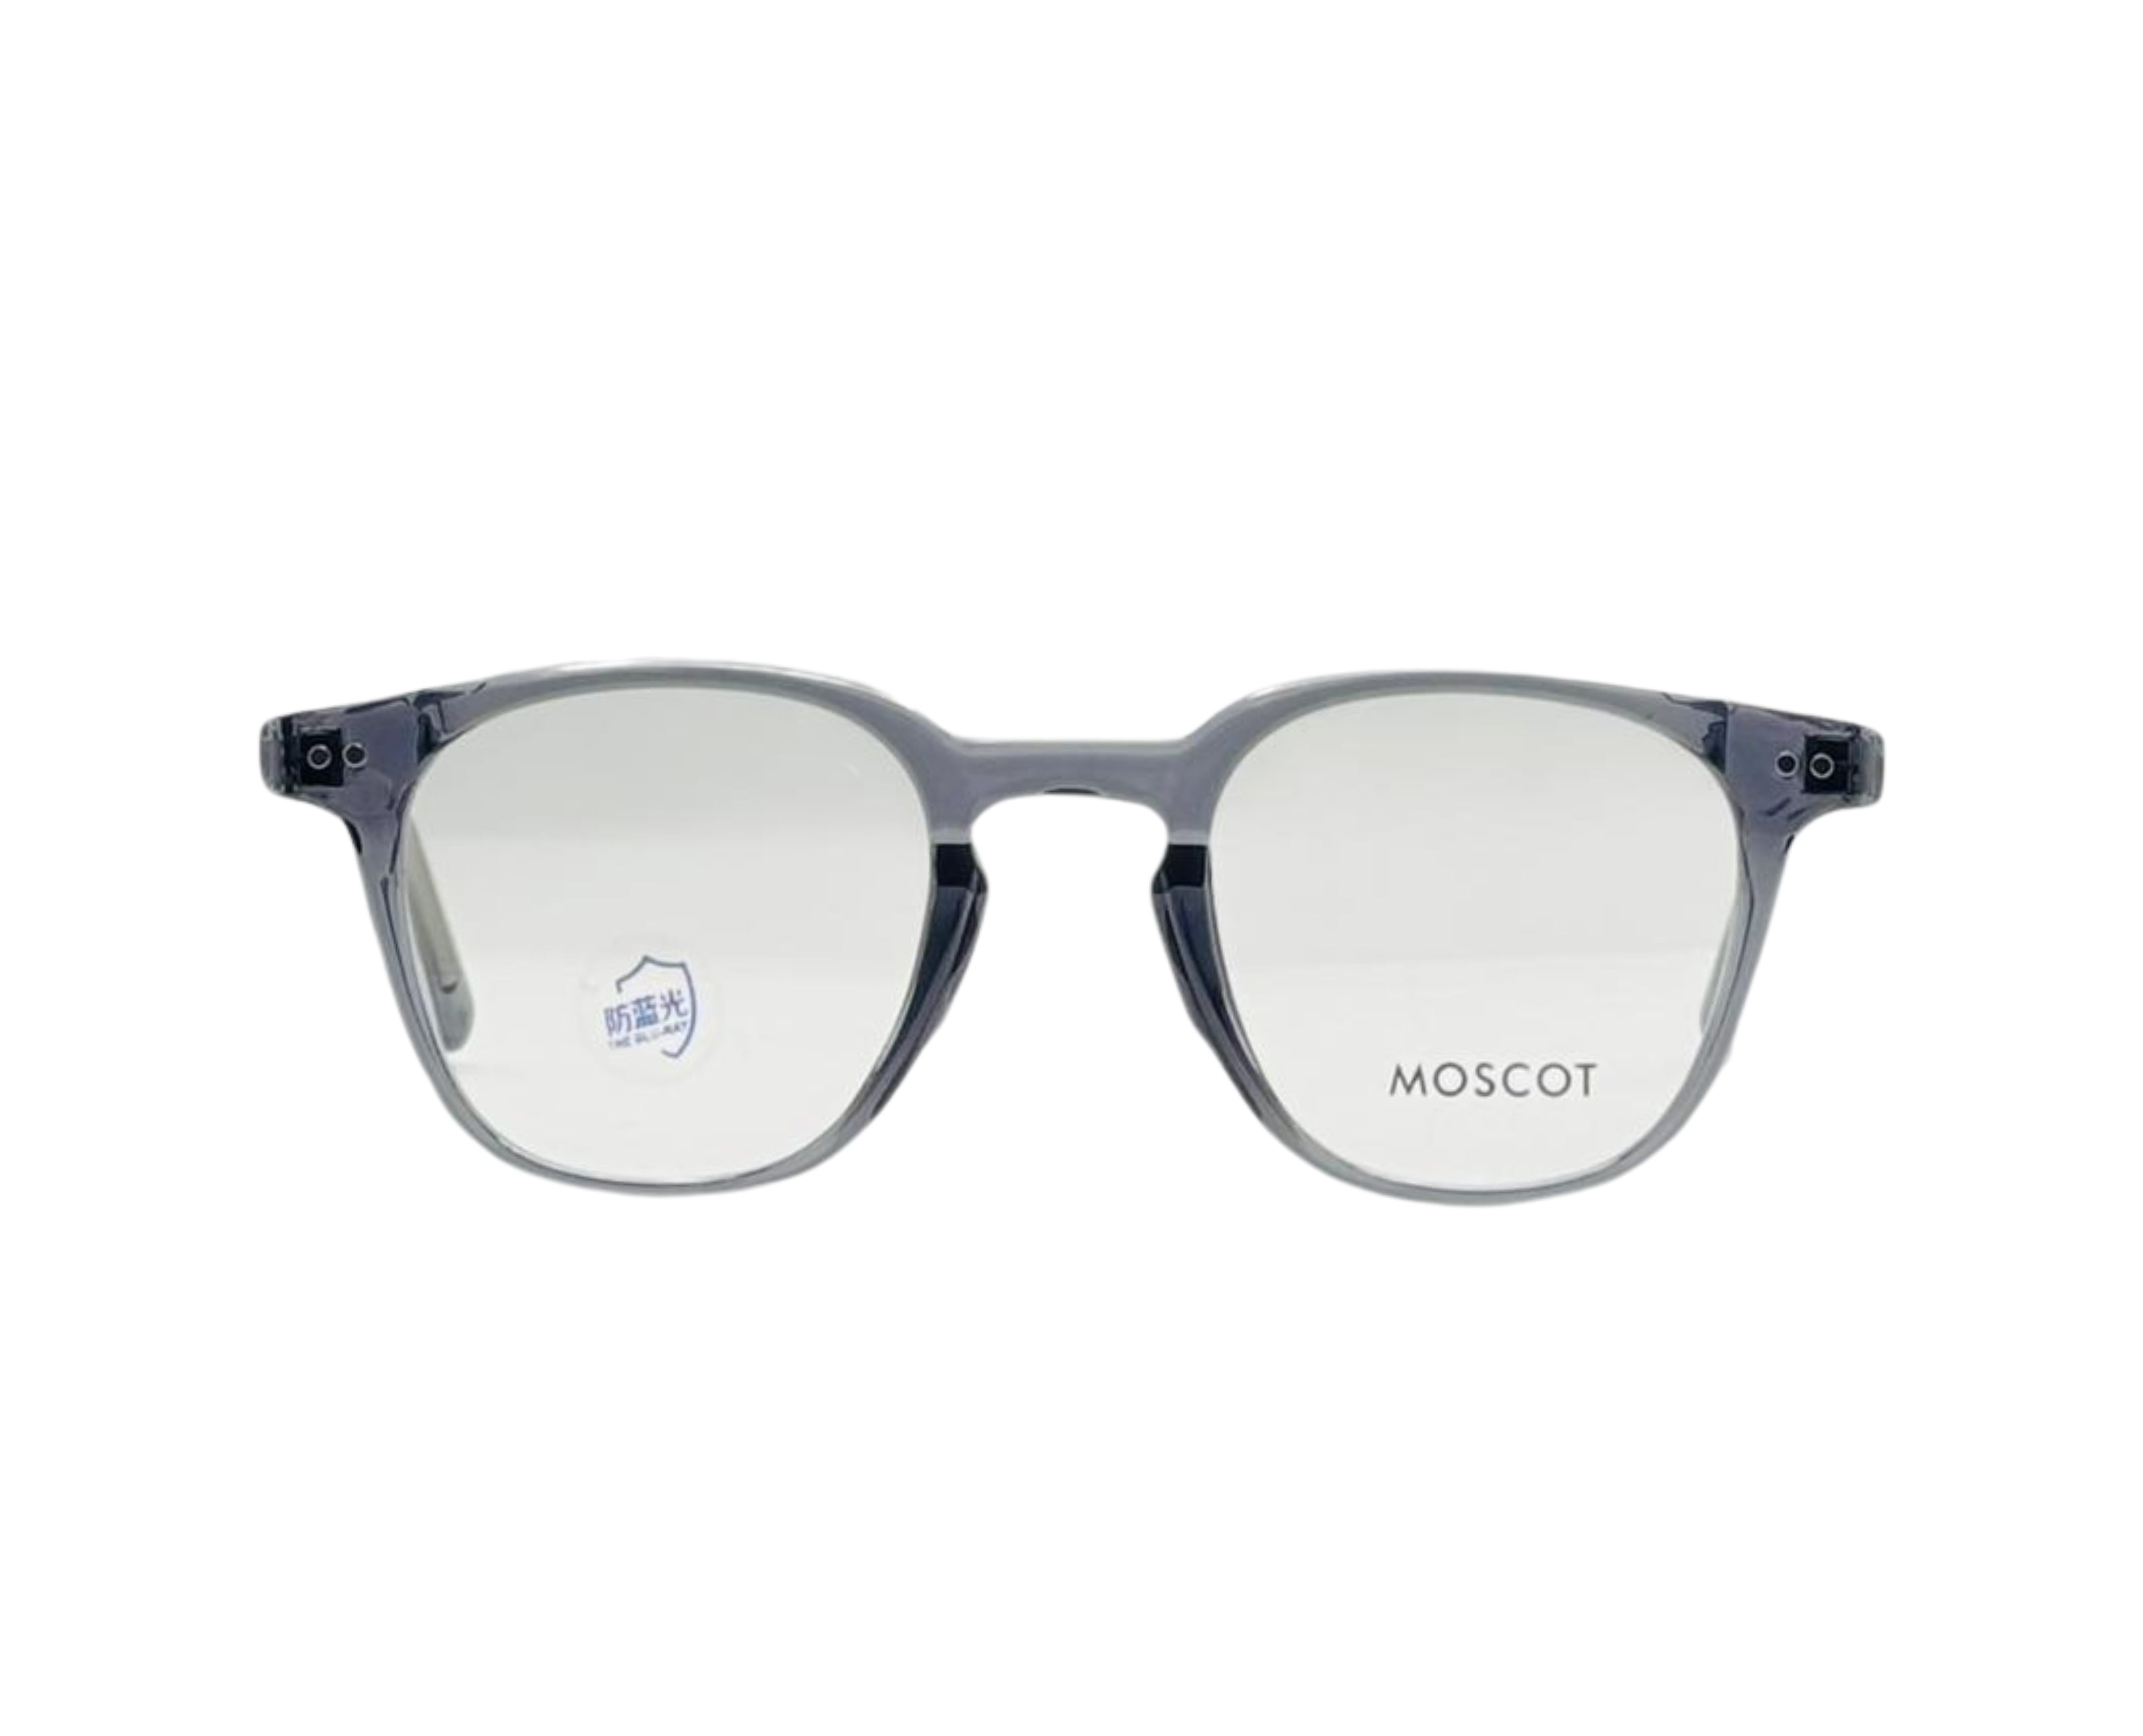 NS Deluxe - J06 - Grey - Eyeglasses